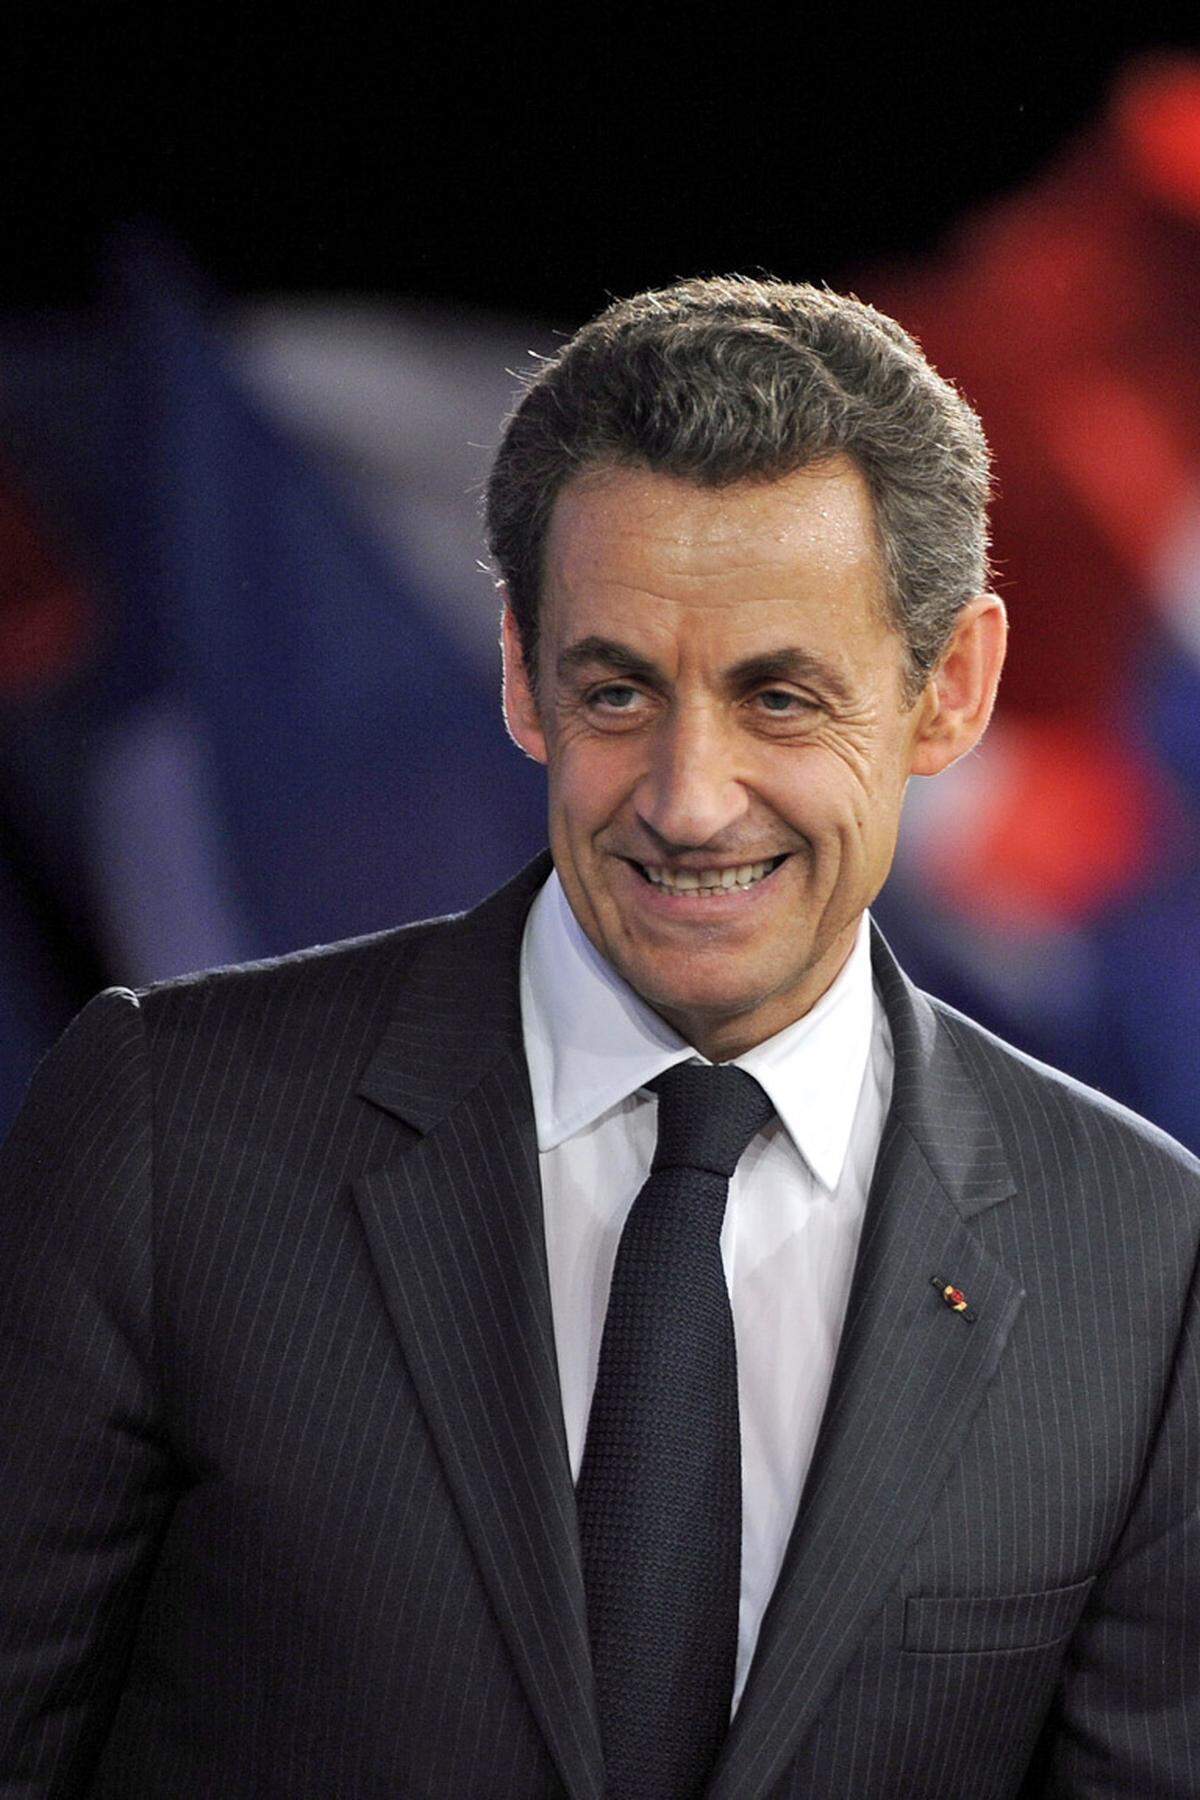 Sarkozys Reformeifer sorgte für ebenso viel Wirbel wie sein Privatleben. Am Ende wurden die Franzosen ihrem hyperaktiven "Bling-Bling-Präsidenten" aber überdrüssig. Sarkozy musste 2012 den Elysée-Palast für den Sozialisten Francois Hollande räumen und wird heute in Umfragen als der unpopulärste Präsident in der Geschichte Frankreichs bewertet.